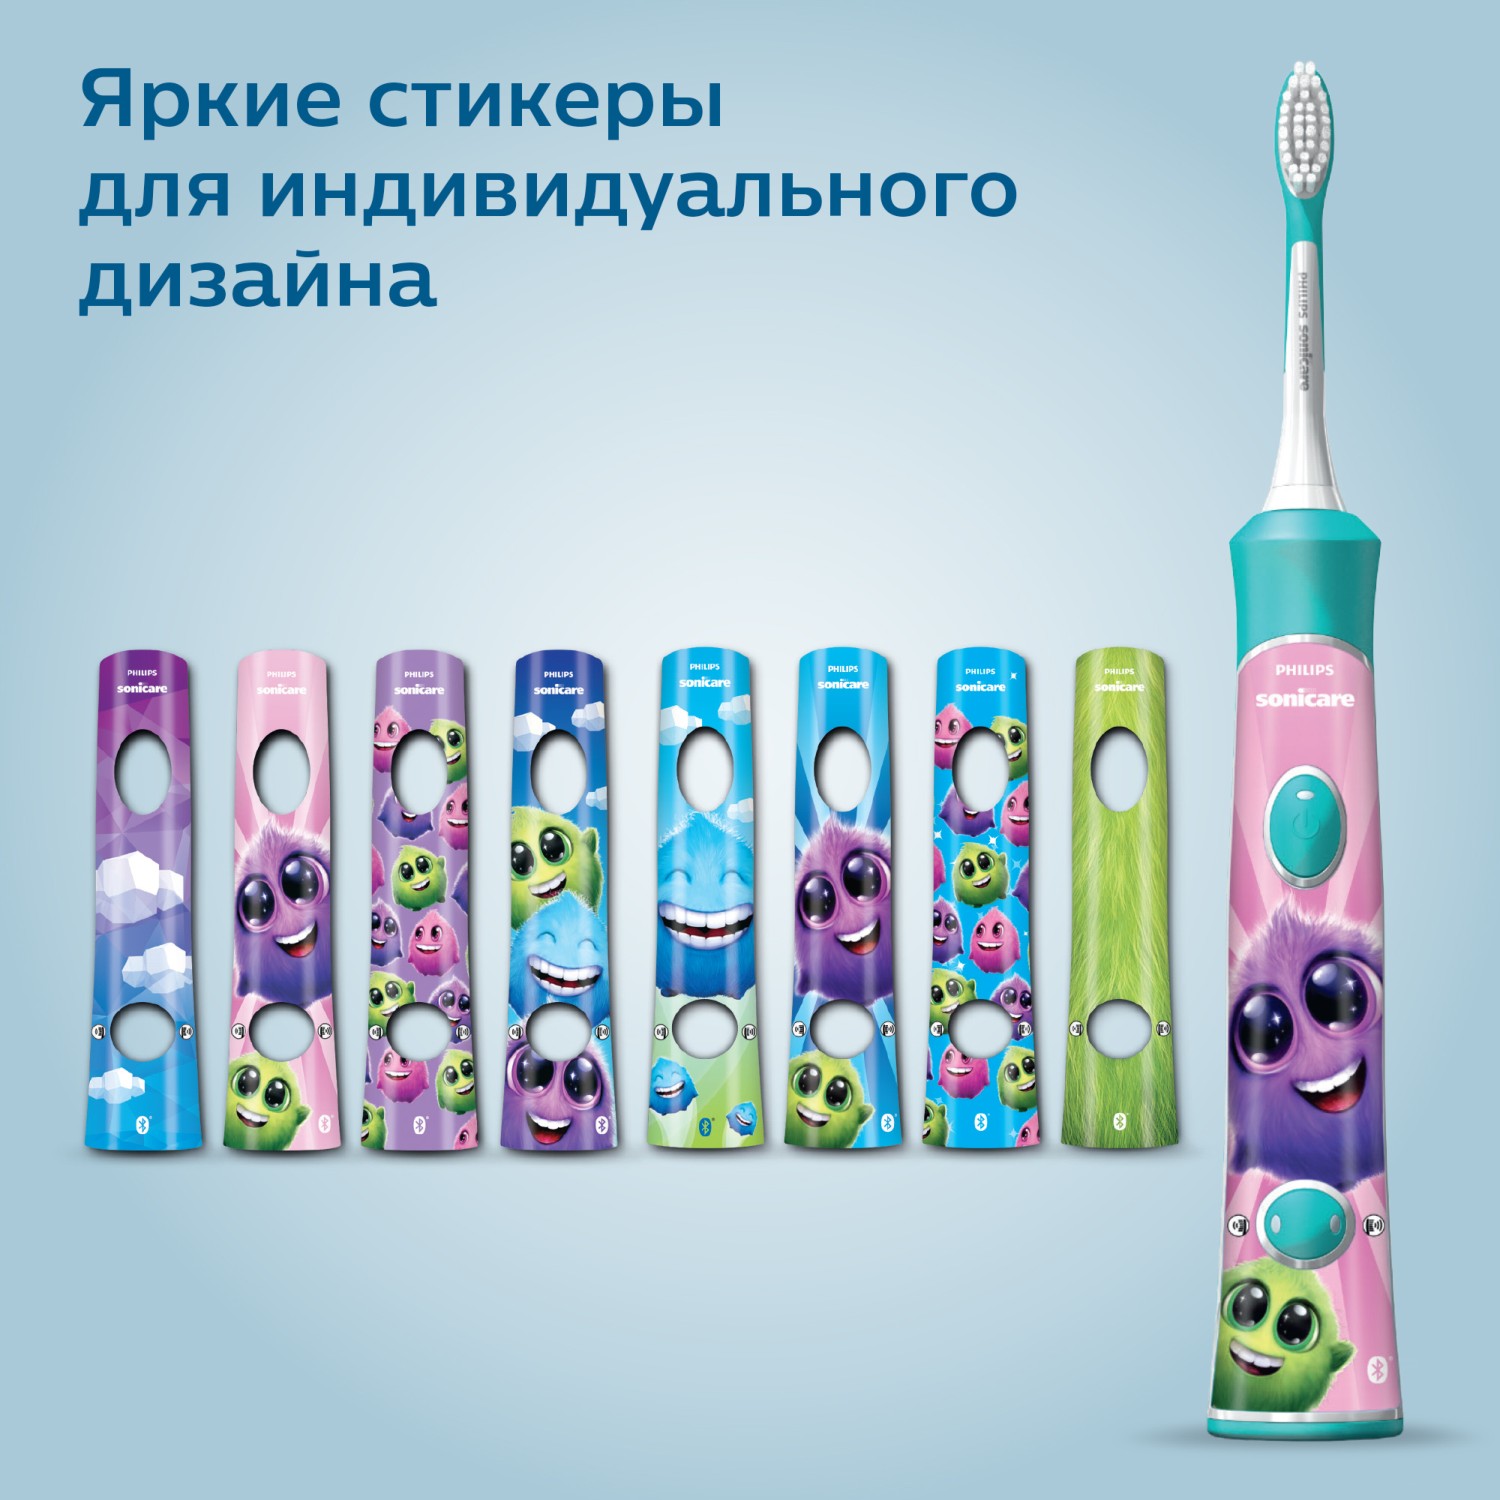 Зубная щетка Philips Sonicare For Kids электрическая с поддержкой Bluetooth HX6322/04 - фото 12